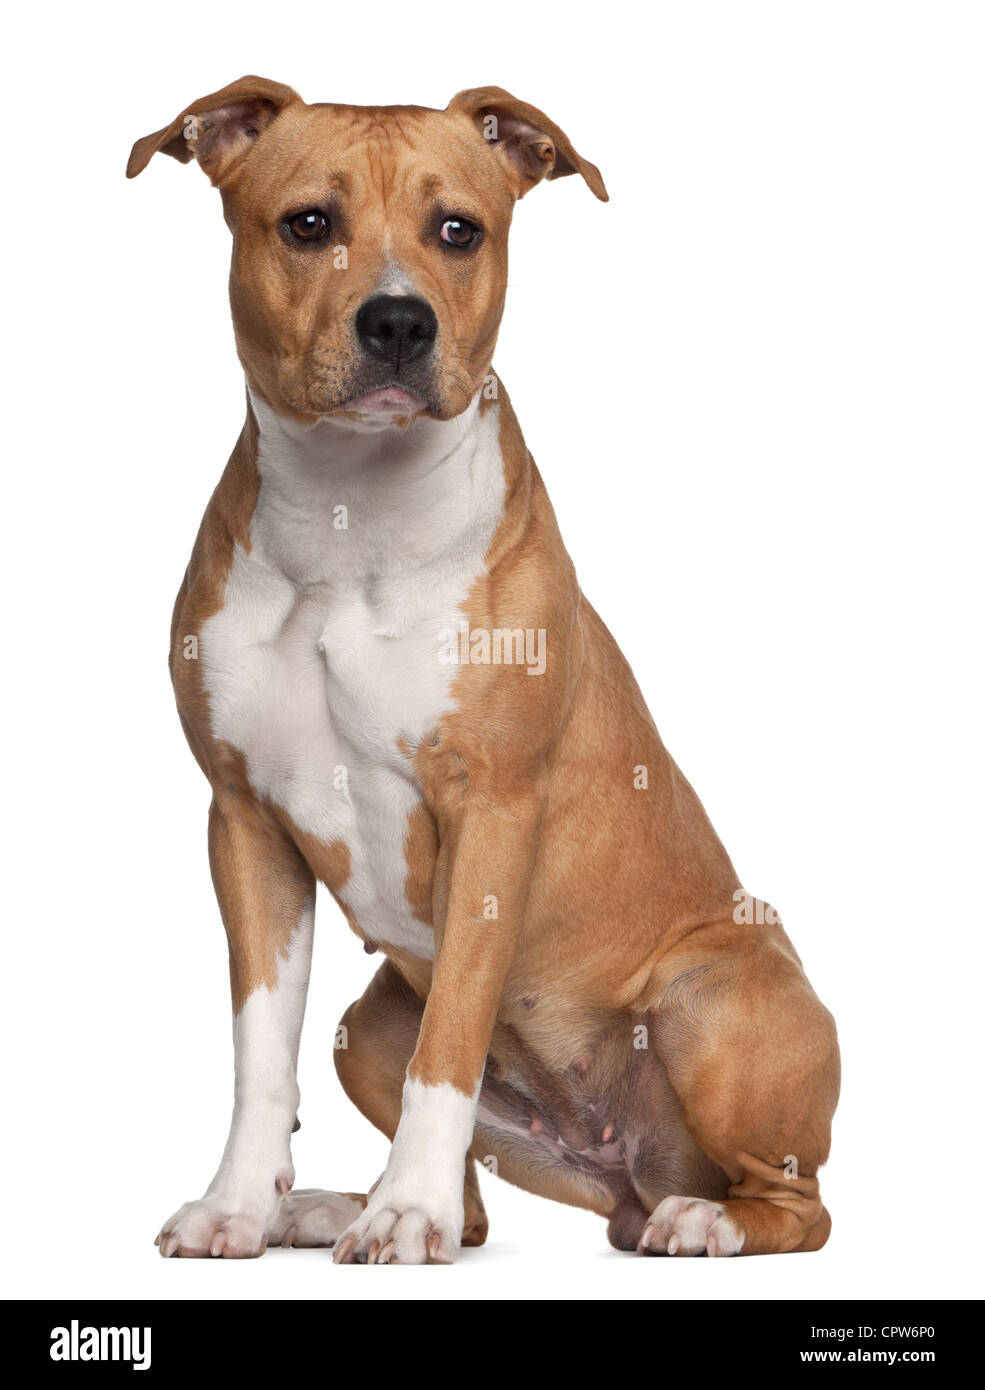 American Staffordshire Terrier, 8 mois, assis contre un fond blanc Banque D'Images